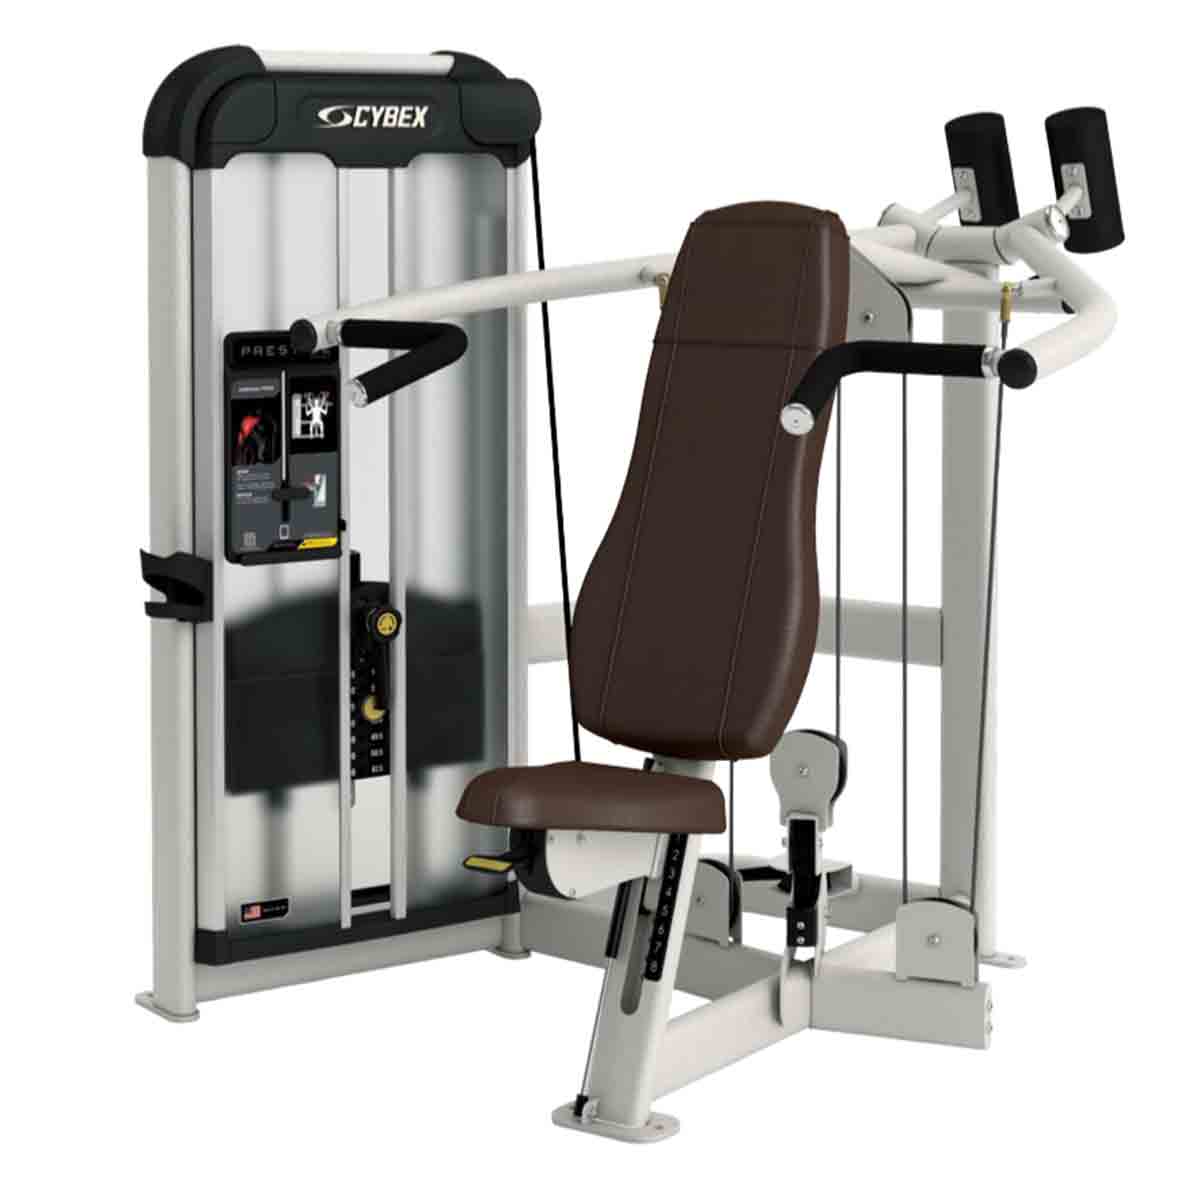 Cybex Weight Training Equipment